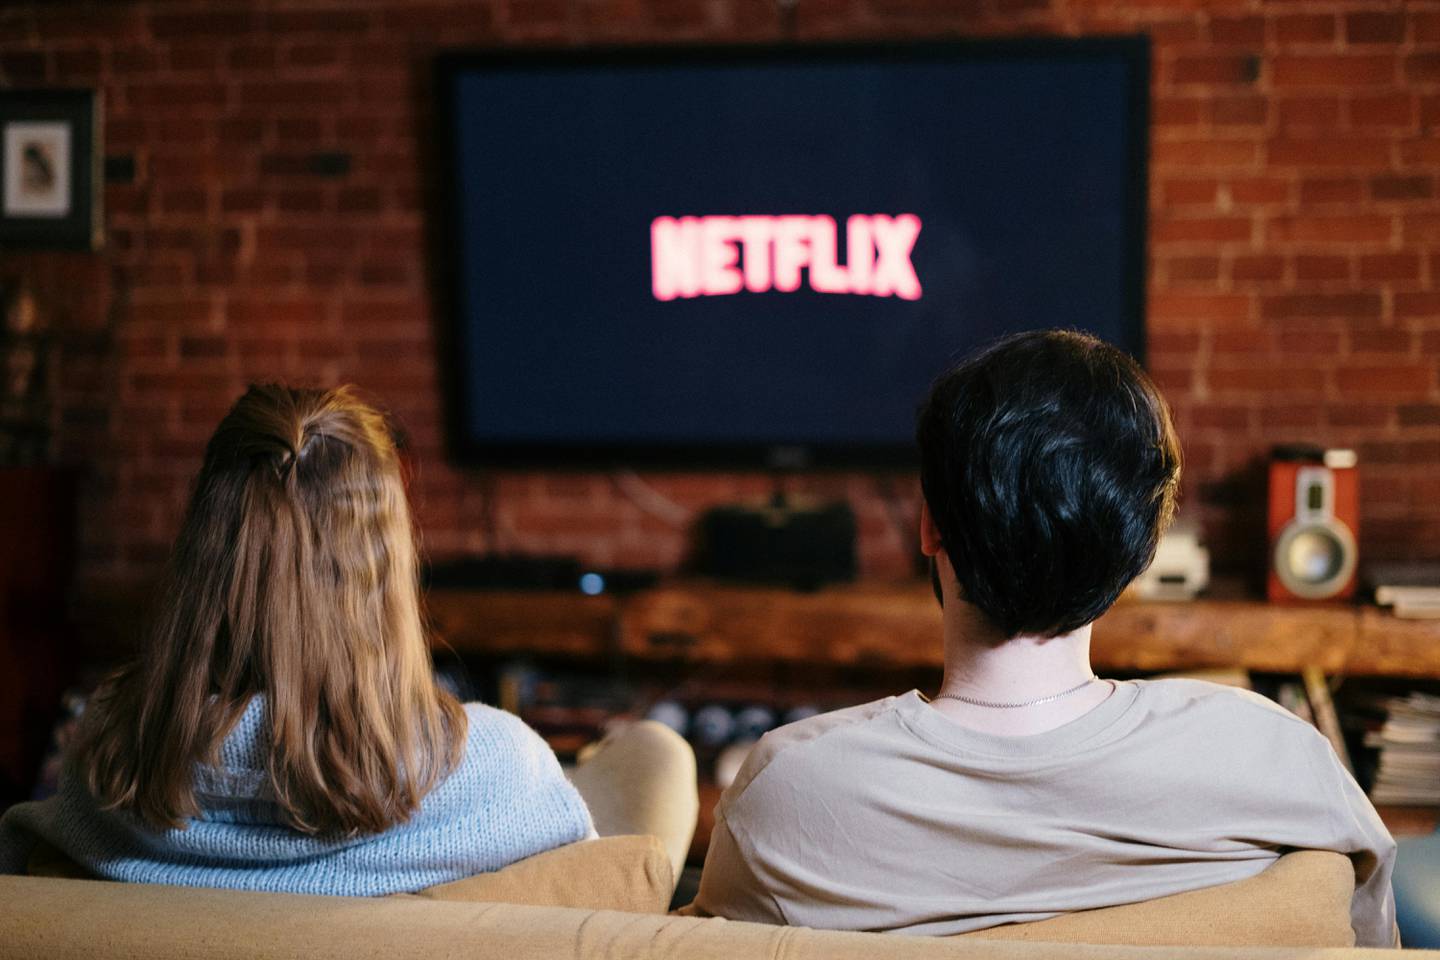 Los servicios de streaming como Netflix cada vez se parece más a la televisión convencional. Foto: Cottonbro studio/ Pexels